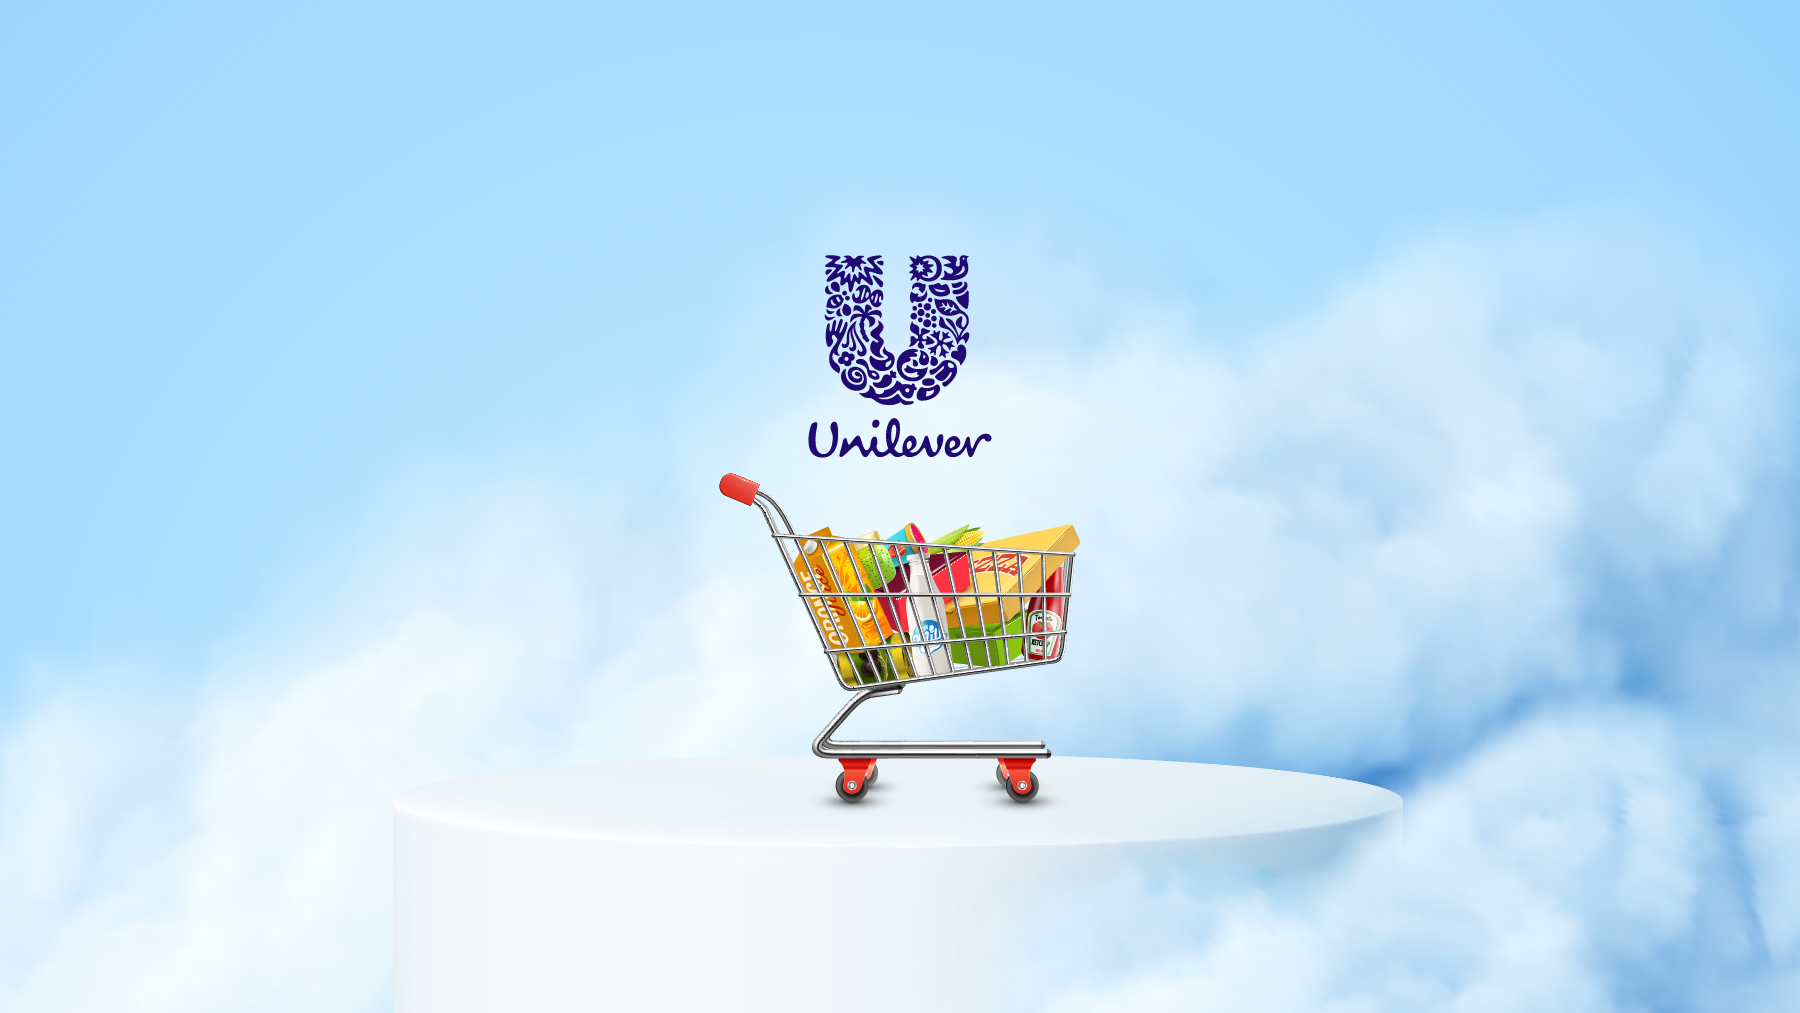 Unilever - Making Life Better